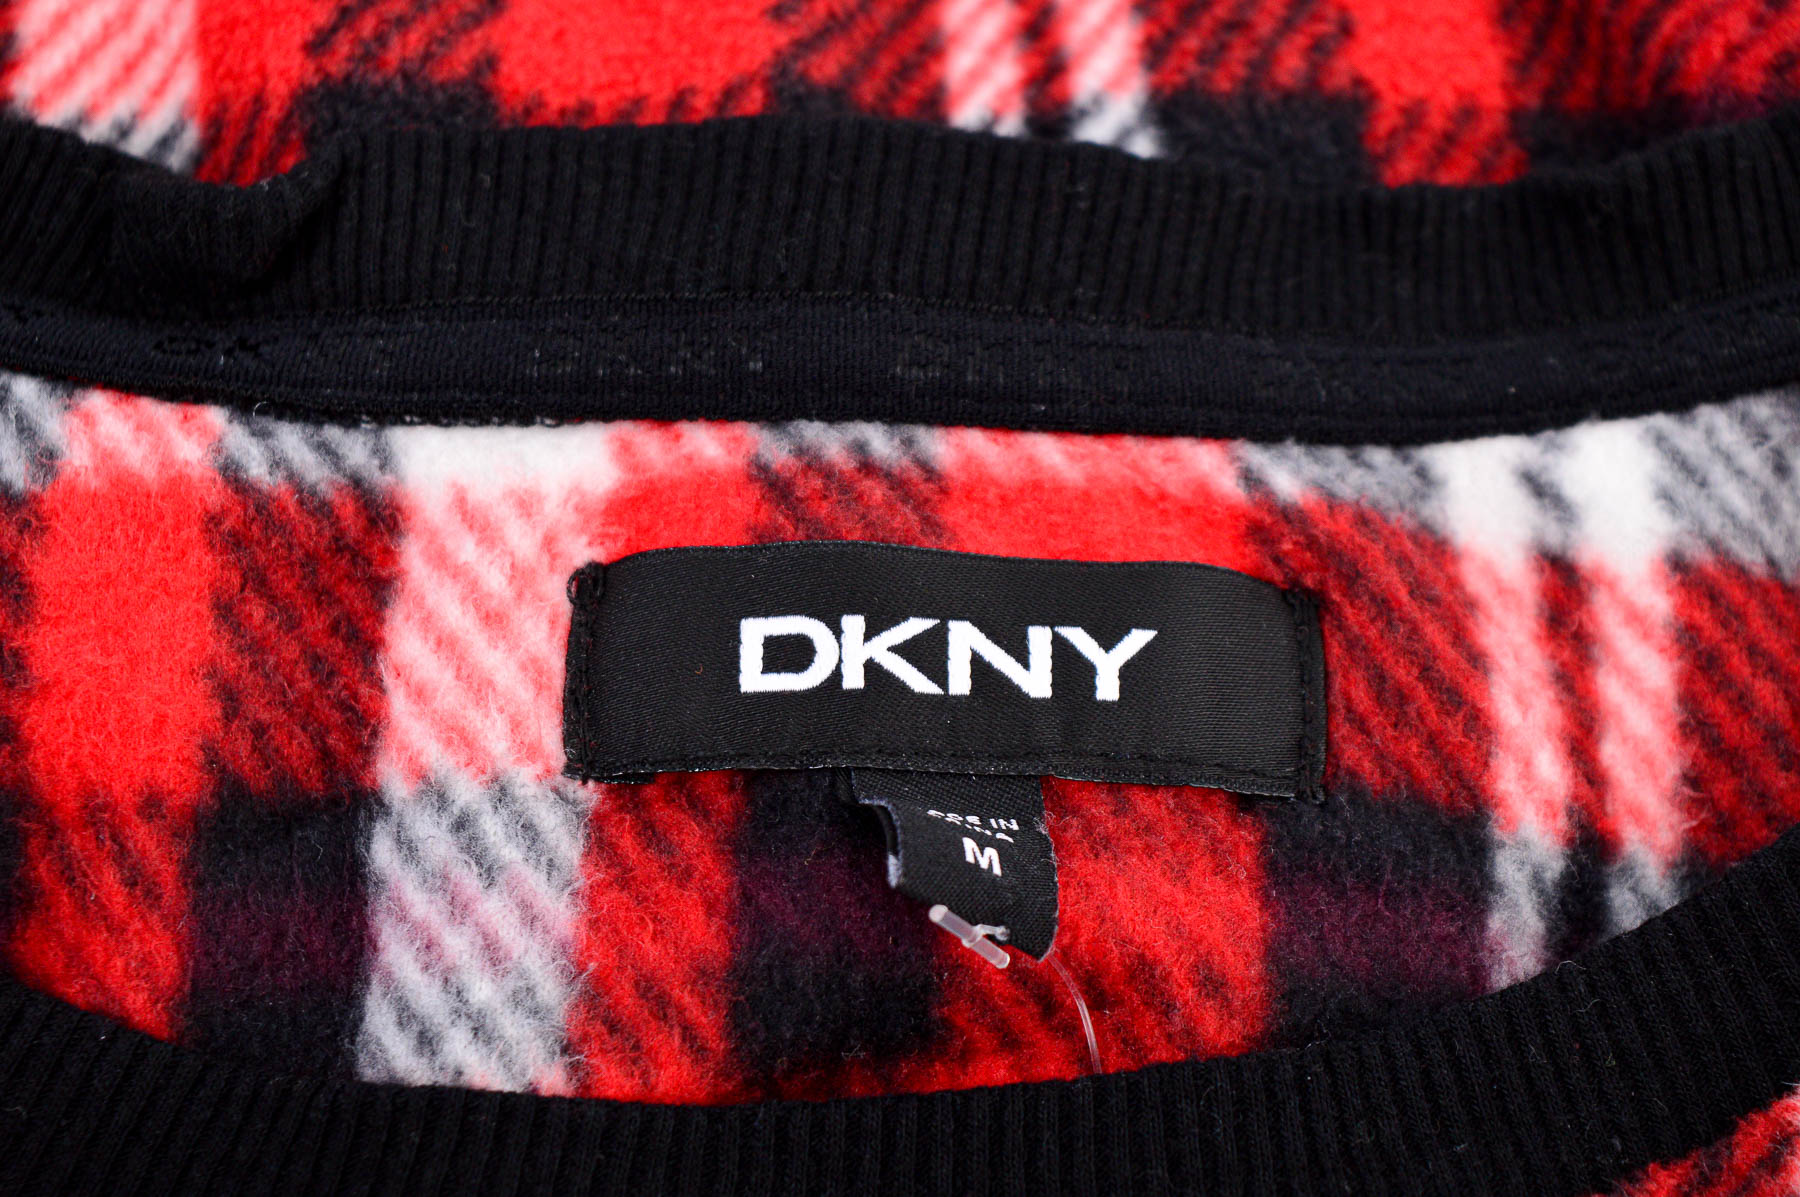 Γυναικείο ρούχο απο πολικό υφασμα - DKNY - 2